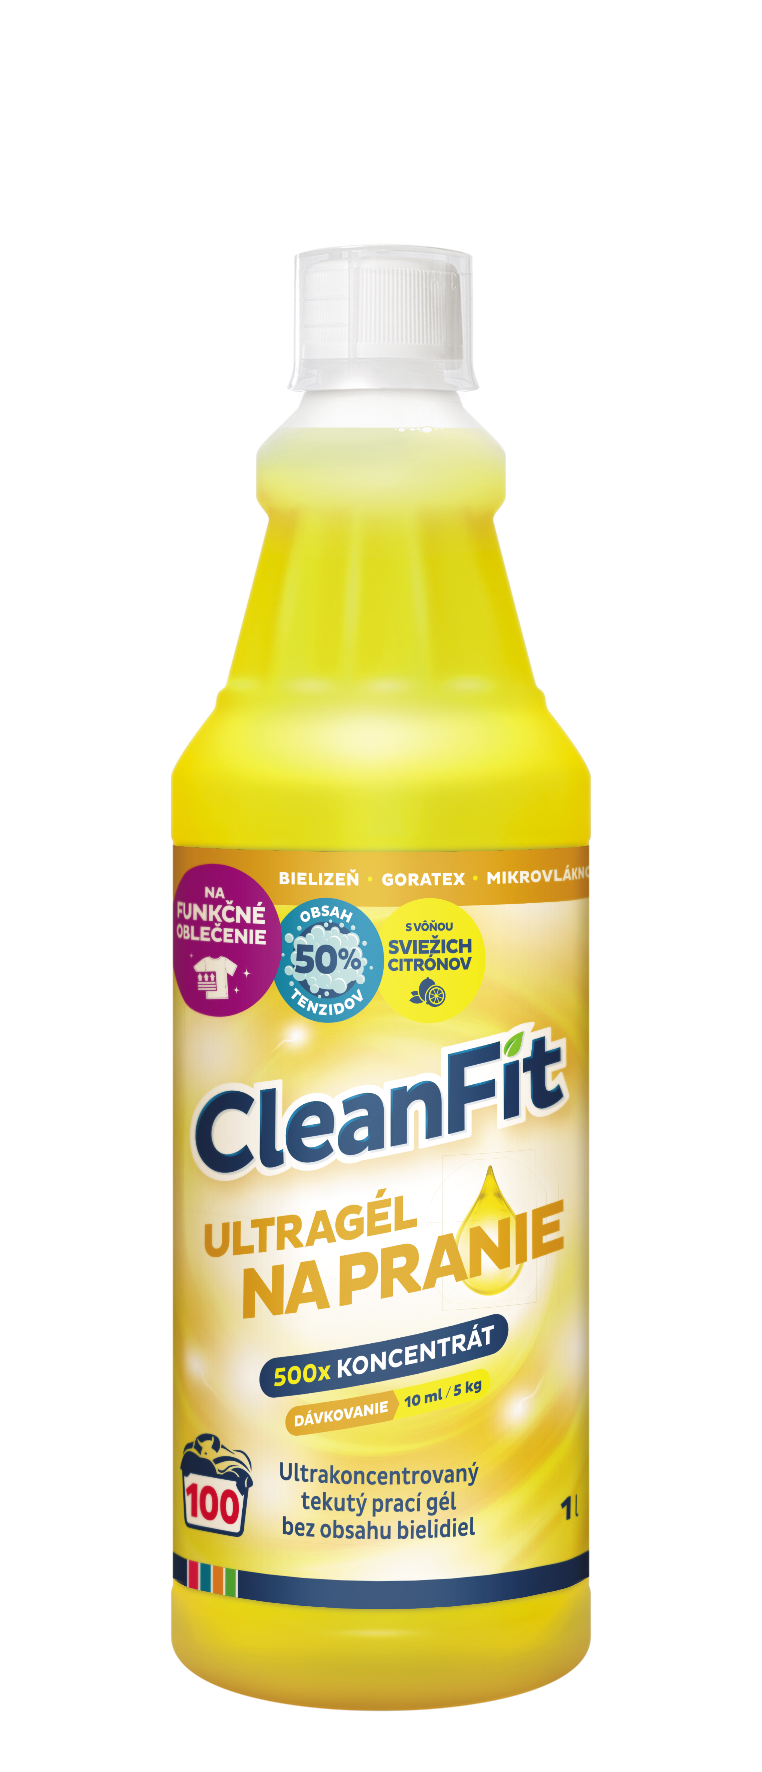 CleanFit ultragél na pranie 1L